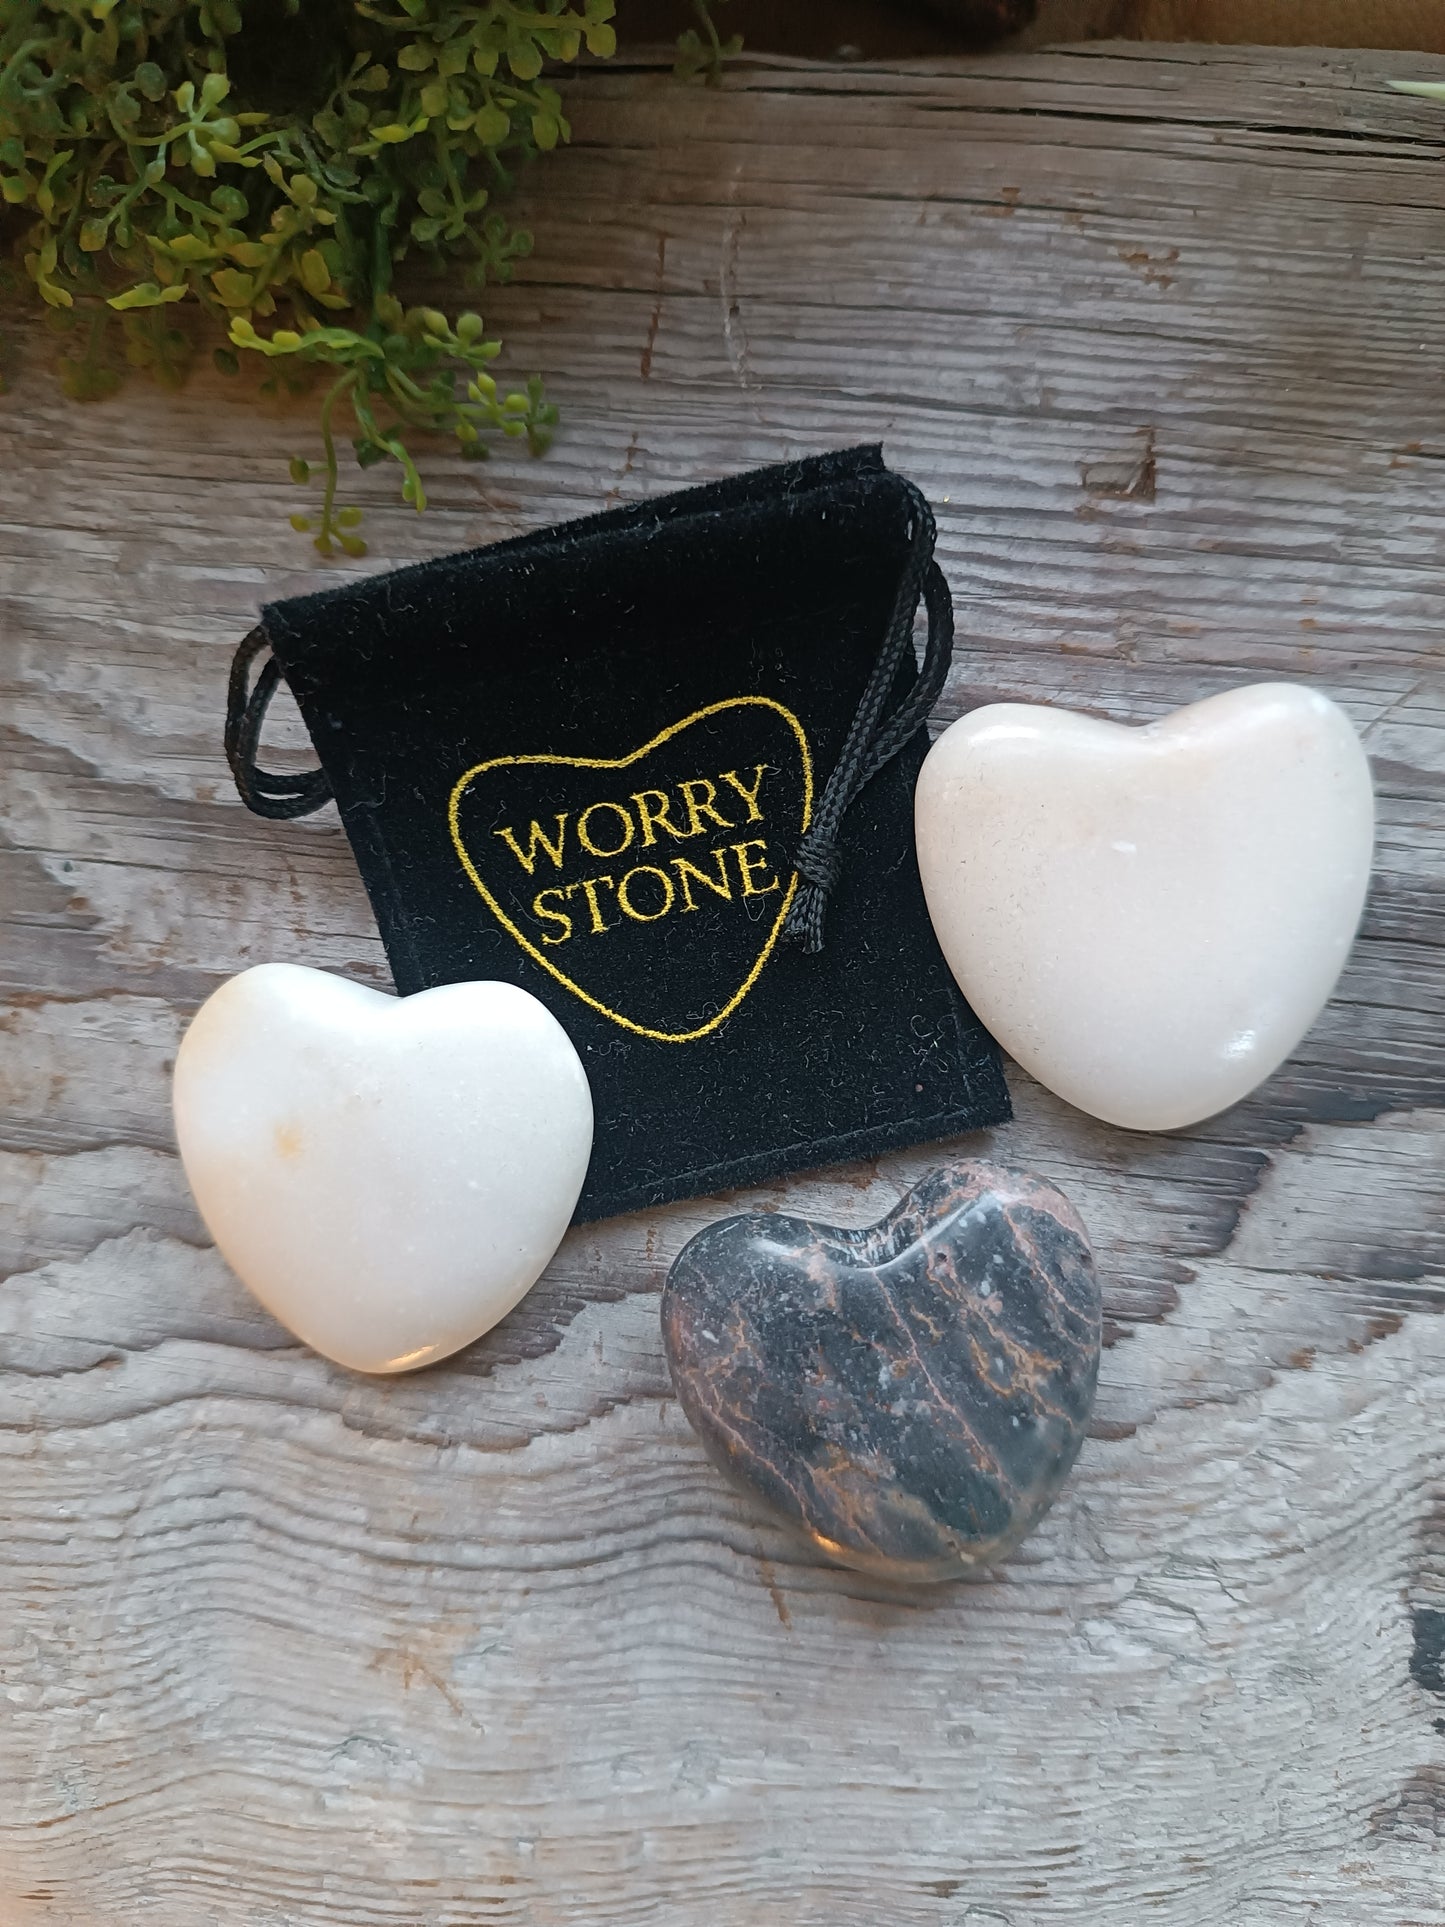 Worry Stones